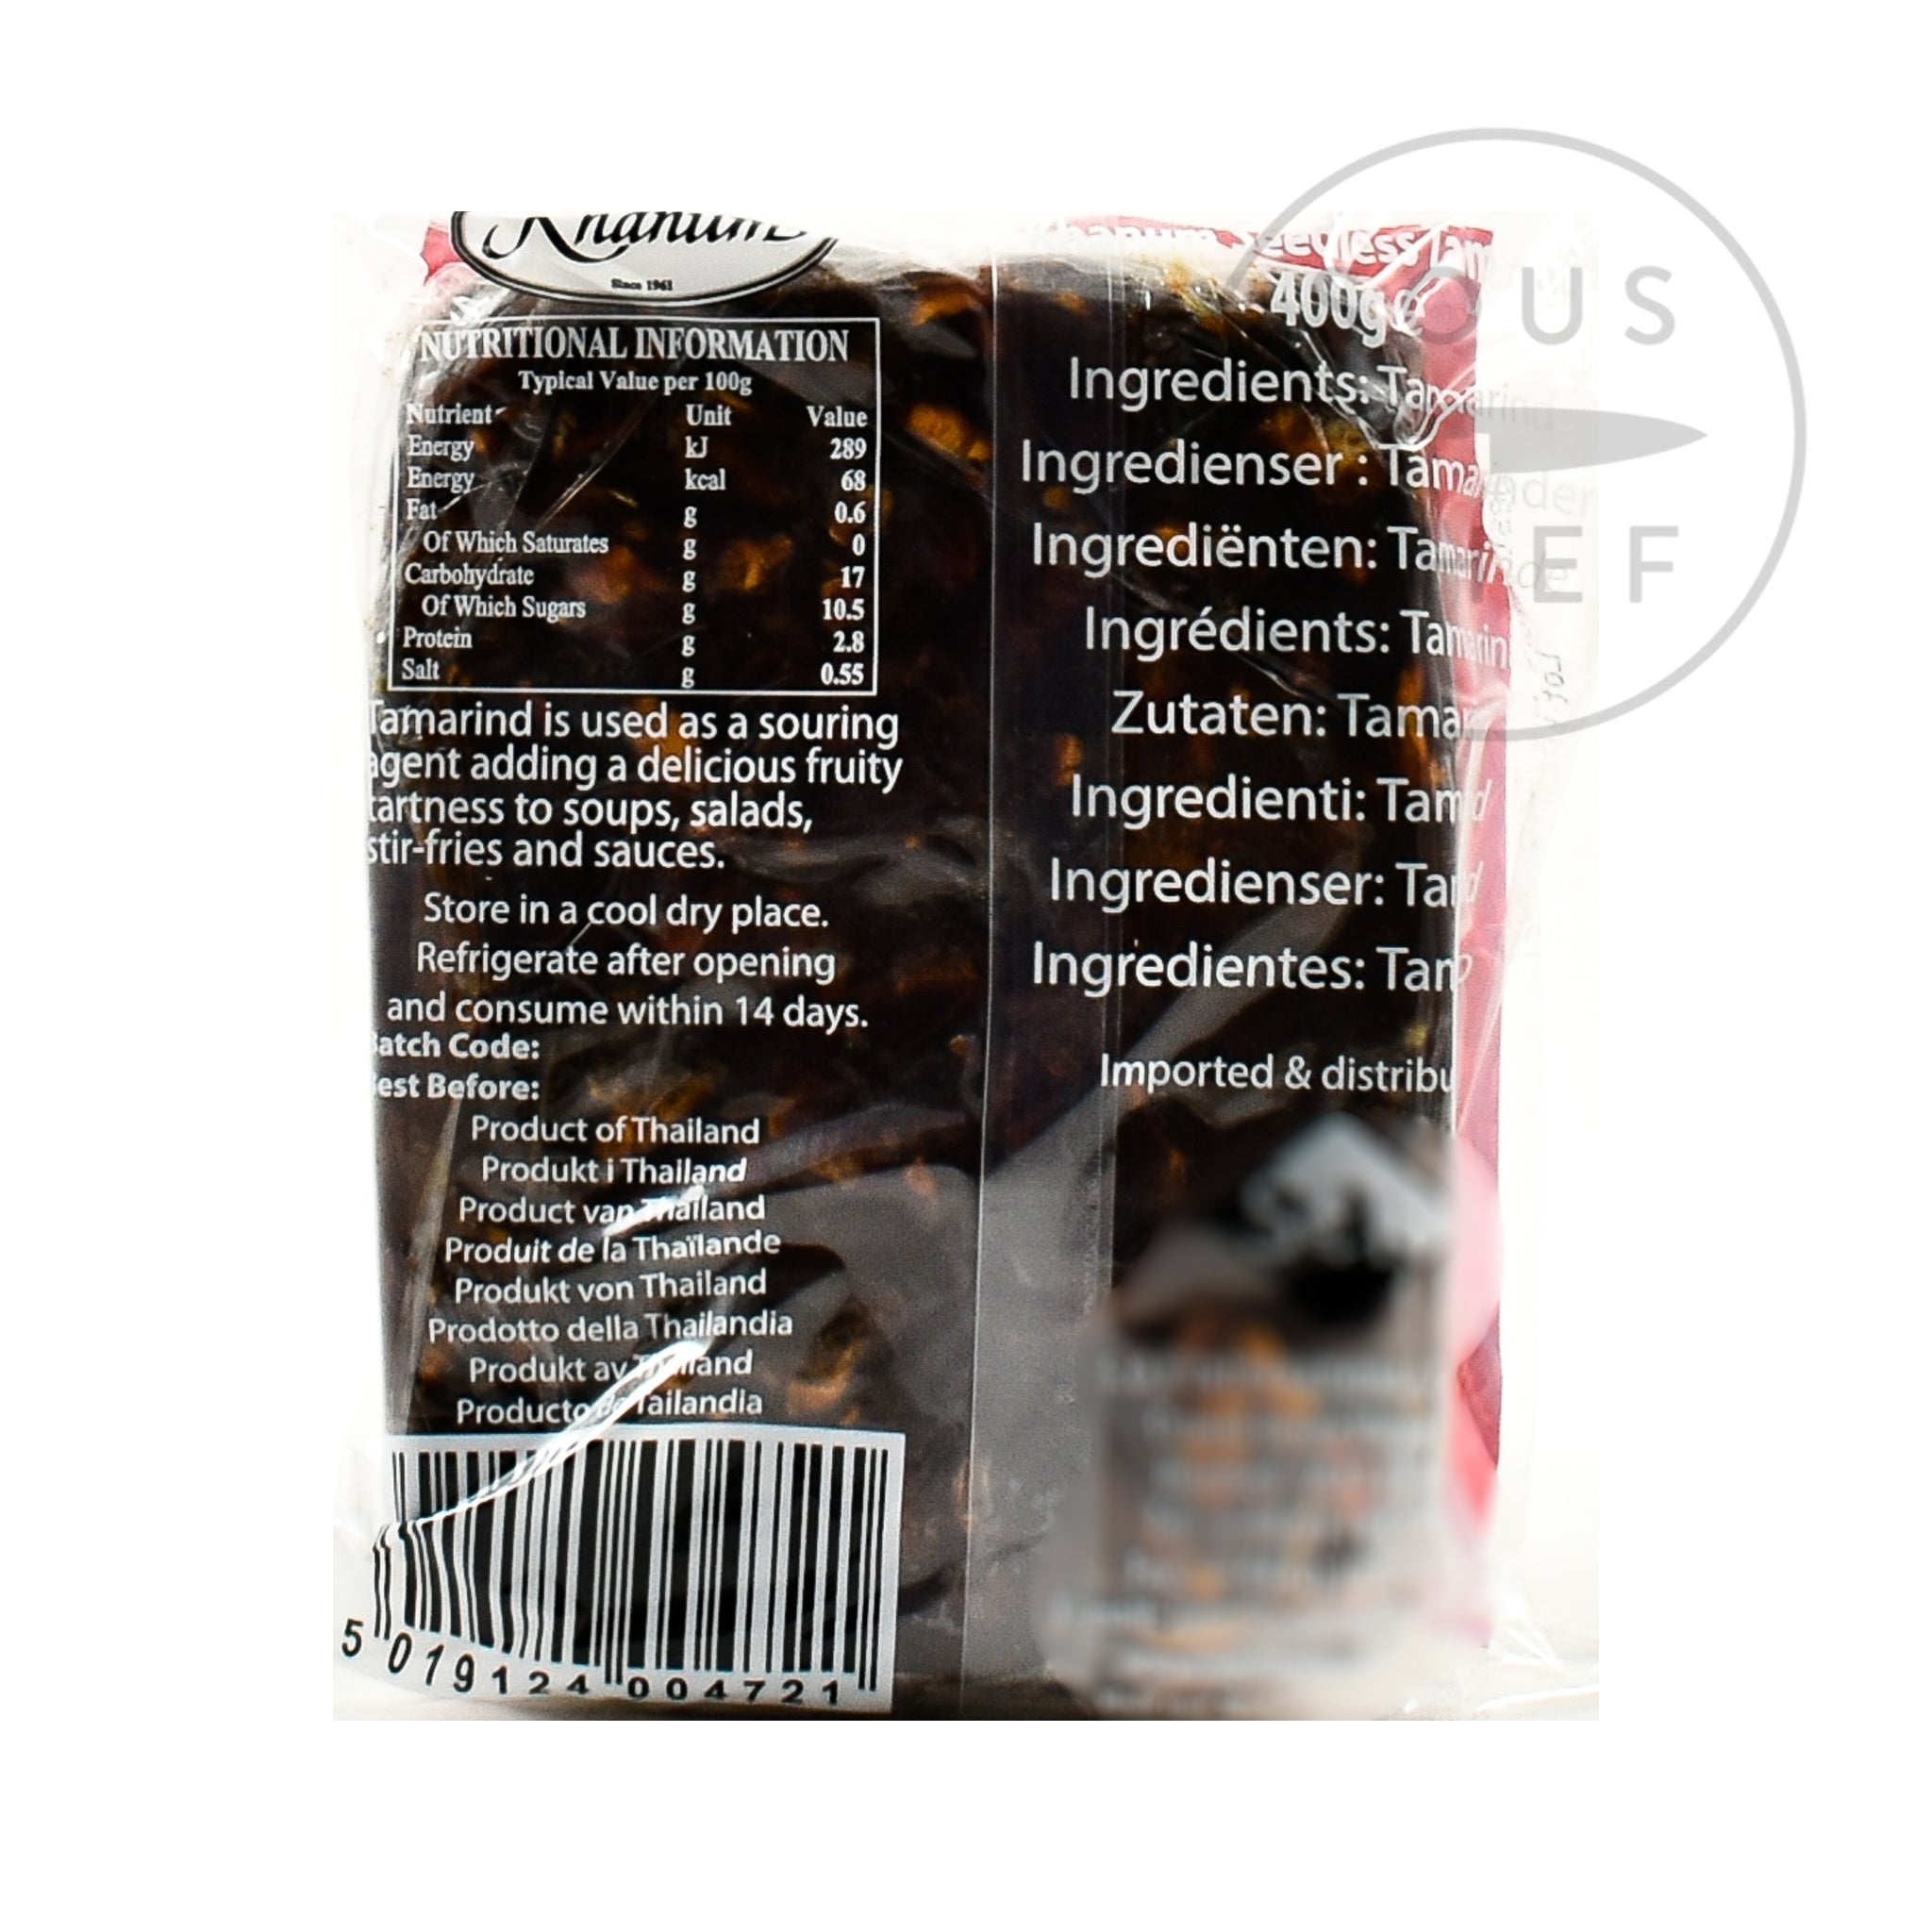 Khanum Seedless Tamarind 400g Ingredients Sauces & Condiments Asian Sauces & Condiments Southeast Asian Food